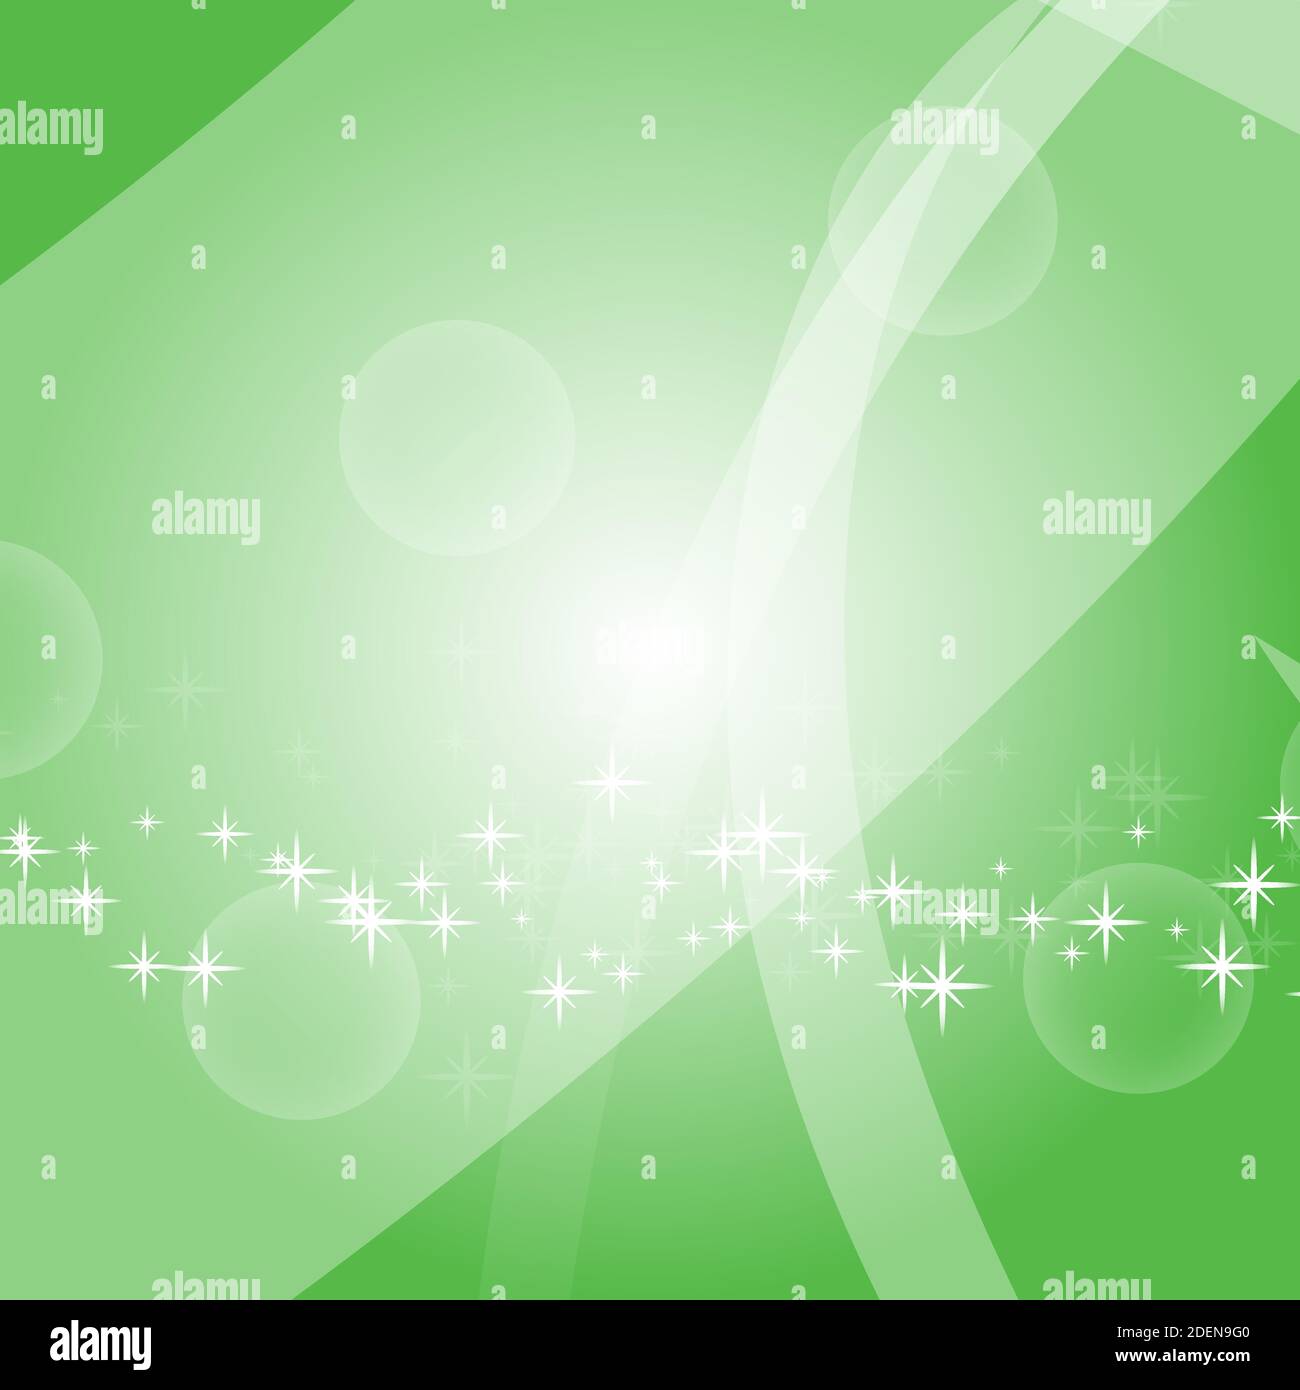 Farbenfroher abstrakter Hintergrund mit Kreisen und Sternen. Helles Design. Einfache flache Vektordarstellung. Stock Vektor